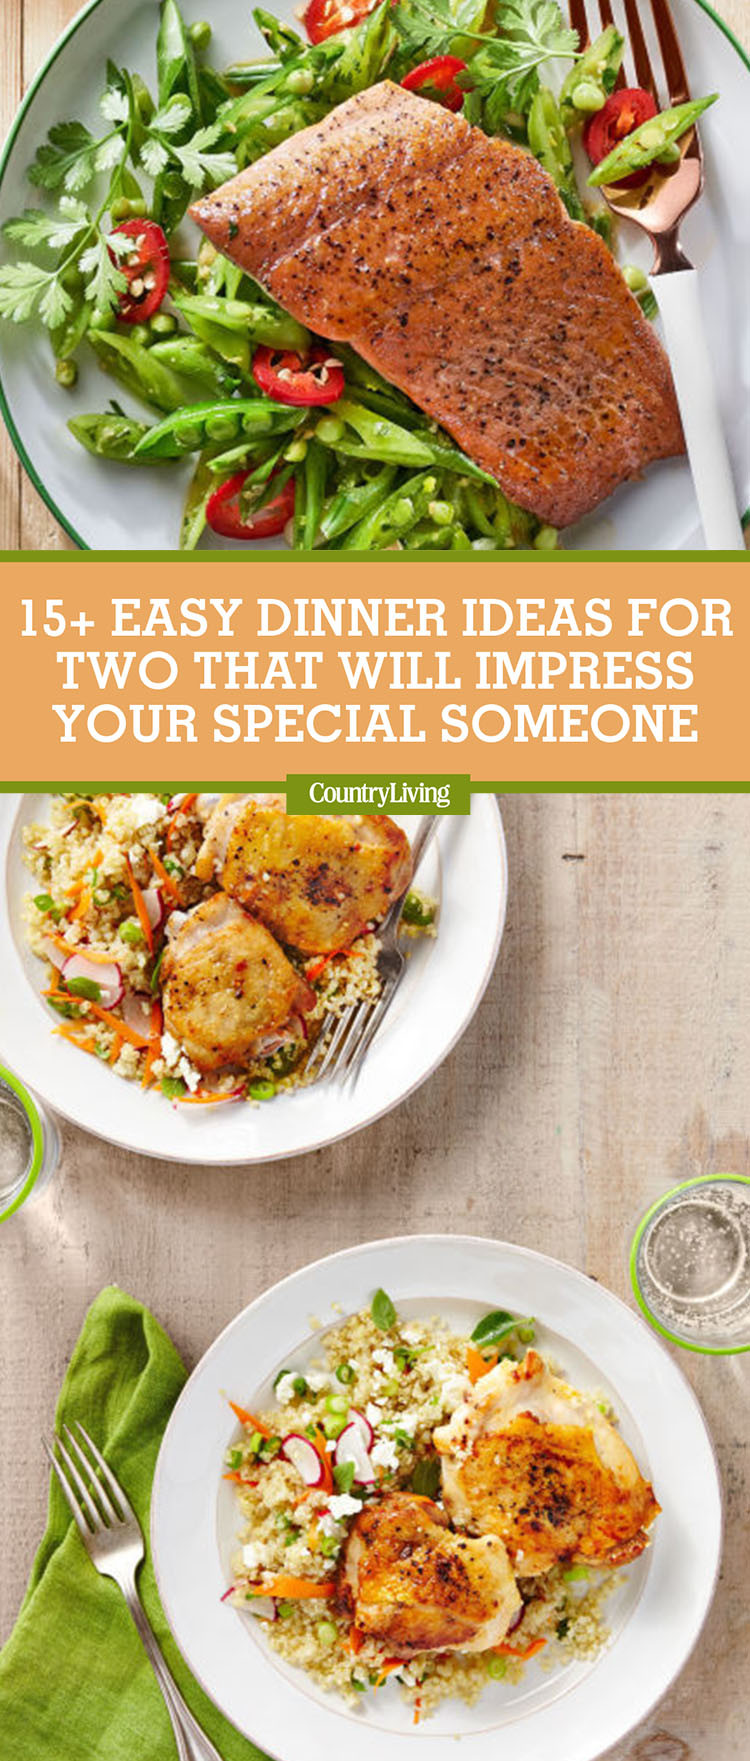 Easy Dinner Recipes For Two
 17 Easy Dinner Ideas for Two Romantic Dinner for Two Recipes